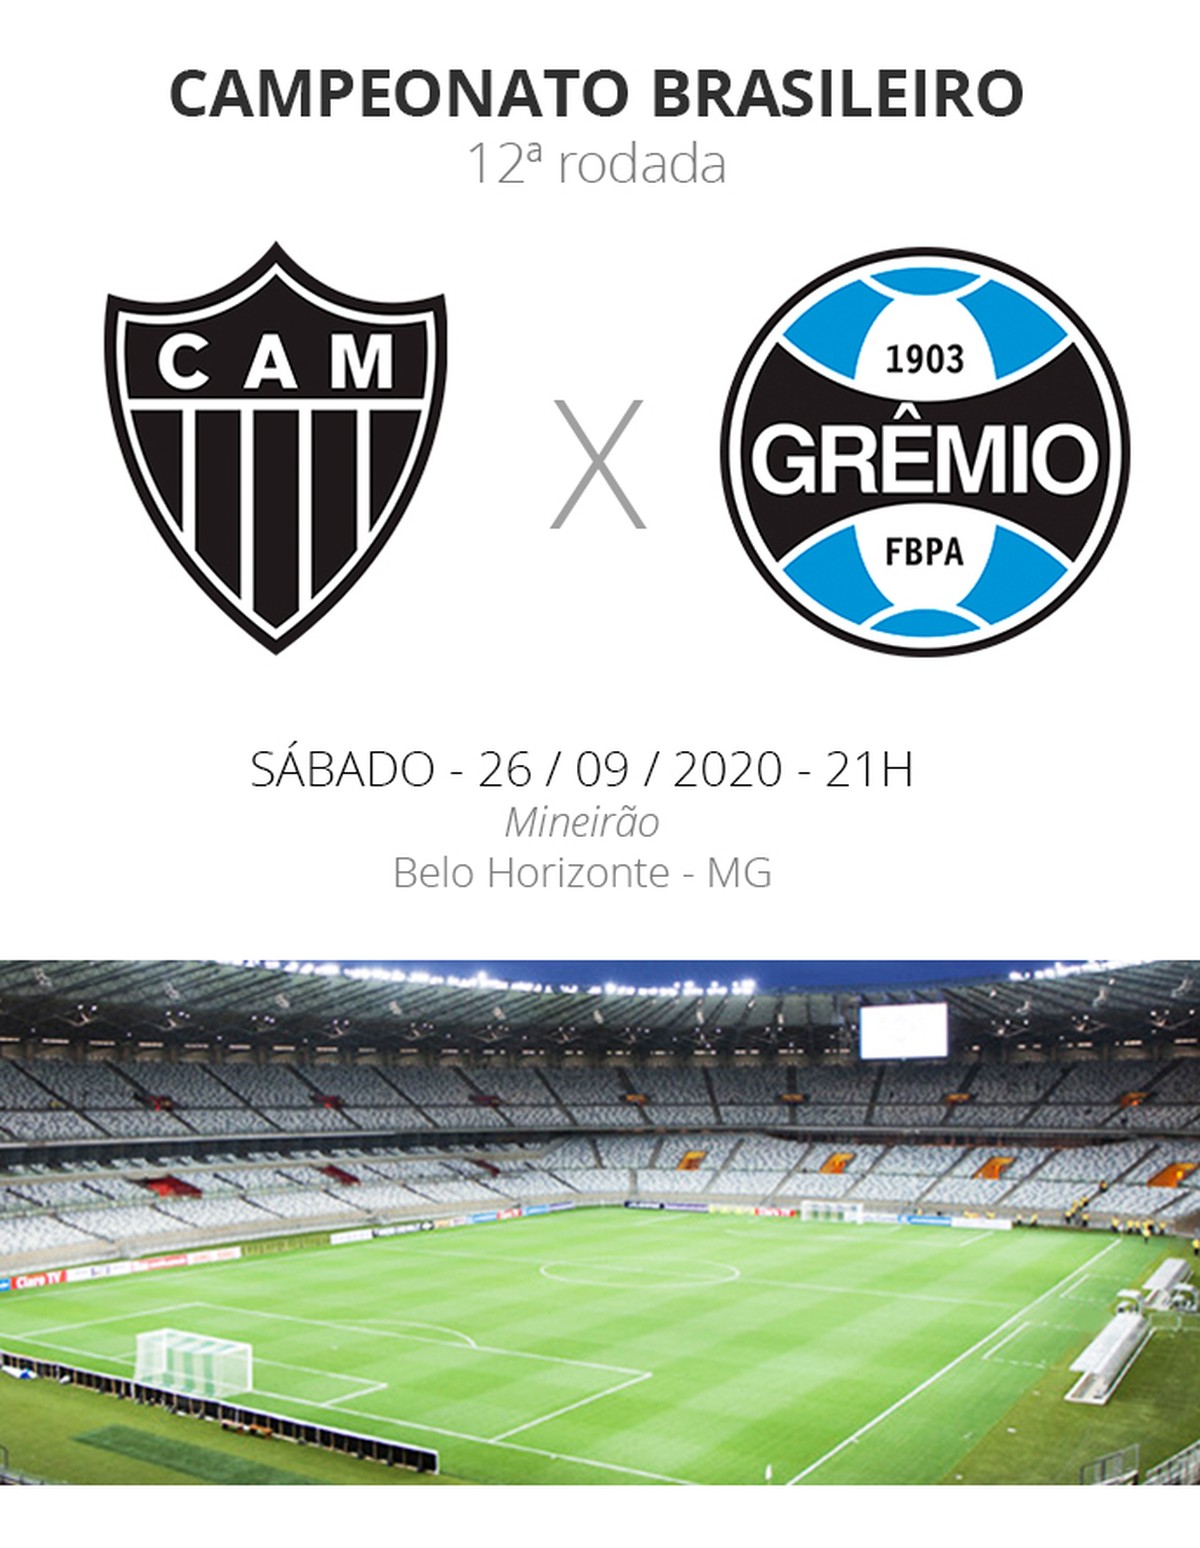 Atlético-MG x Grêmio: onde assistir, escalações e arbitragemJogada 10